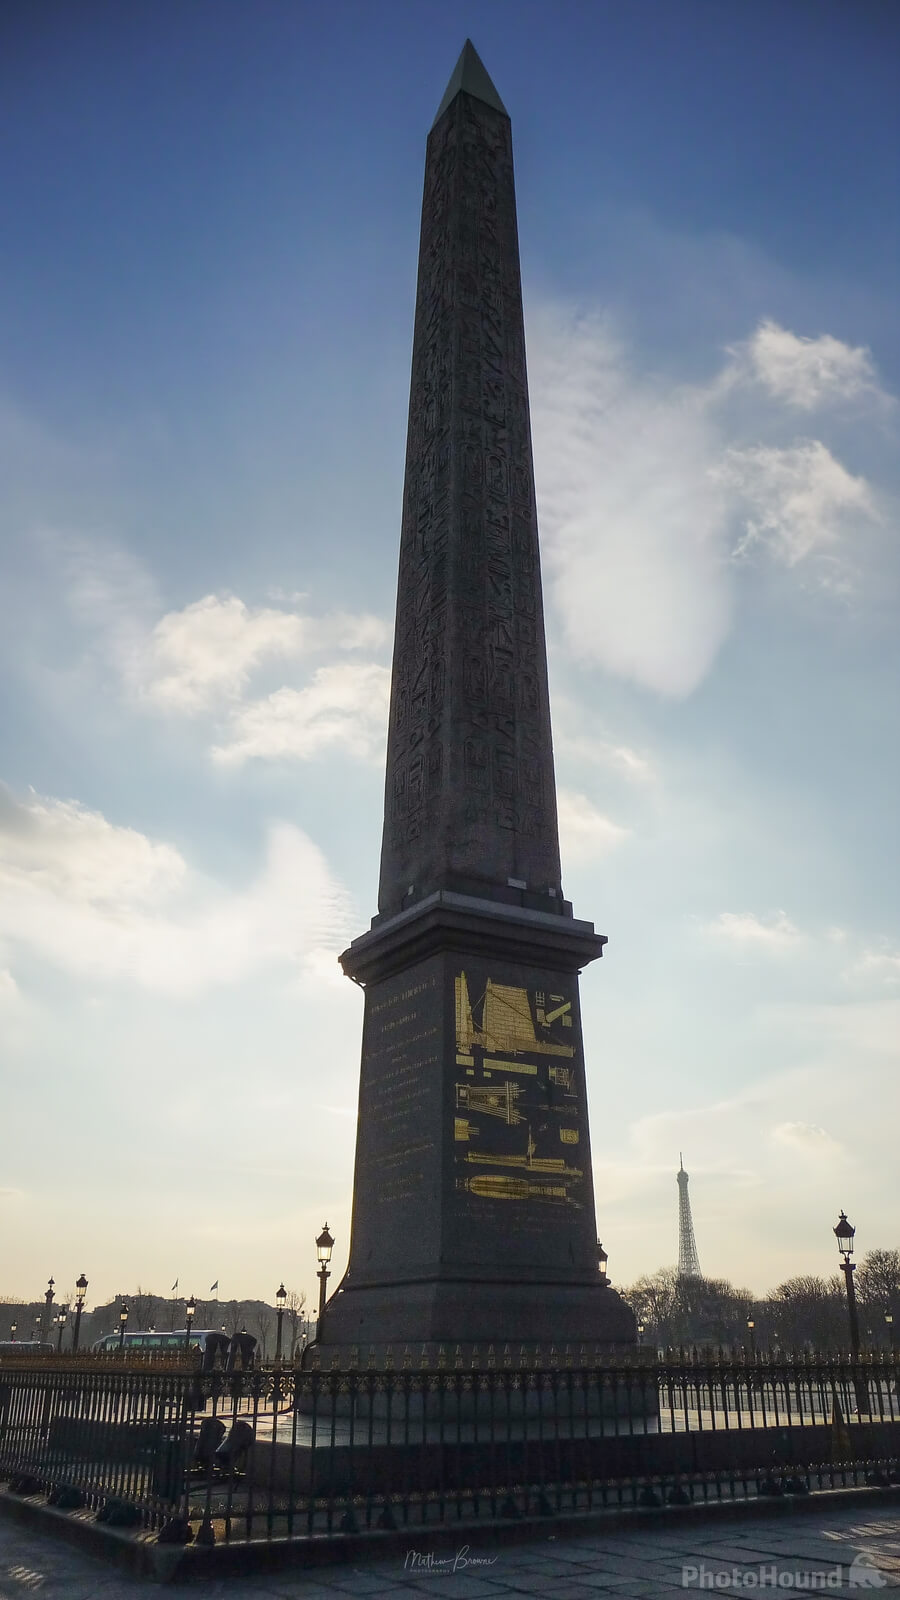 Image of Place de la Concorde by Mathew Browne